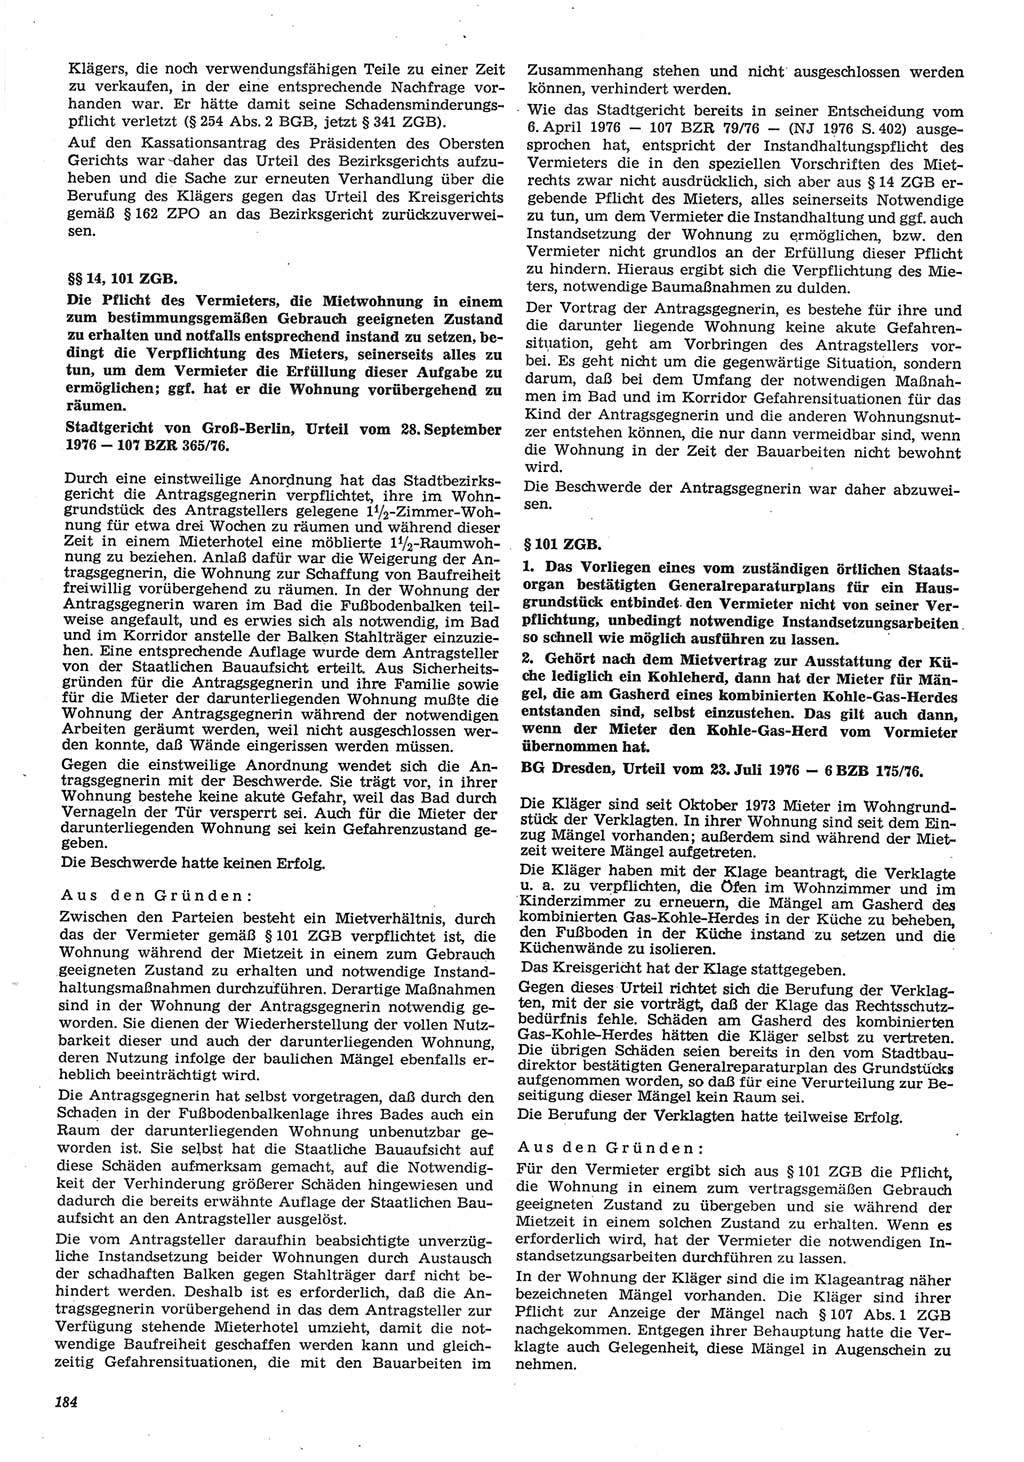 Neue Justiz (NJ), Zeitschrift für Recht und Rechtswissenschaft-Zeitschrift, sozialistisches Recht und Gesetzlichkeit, 31. Jahrgang 1977, Seite 184 (NJ DDR 1977, S. 184)